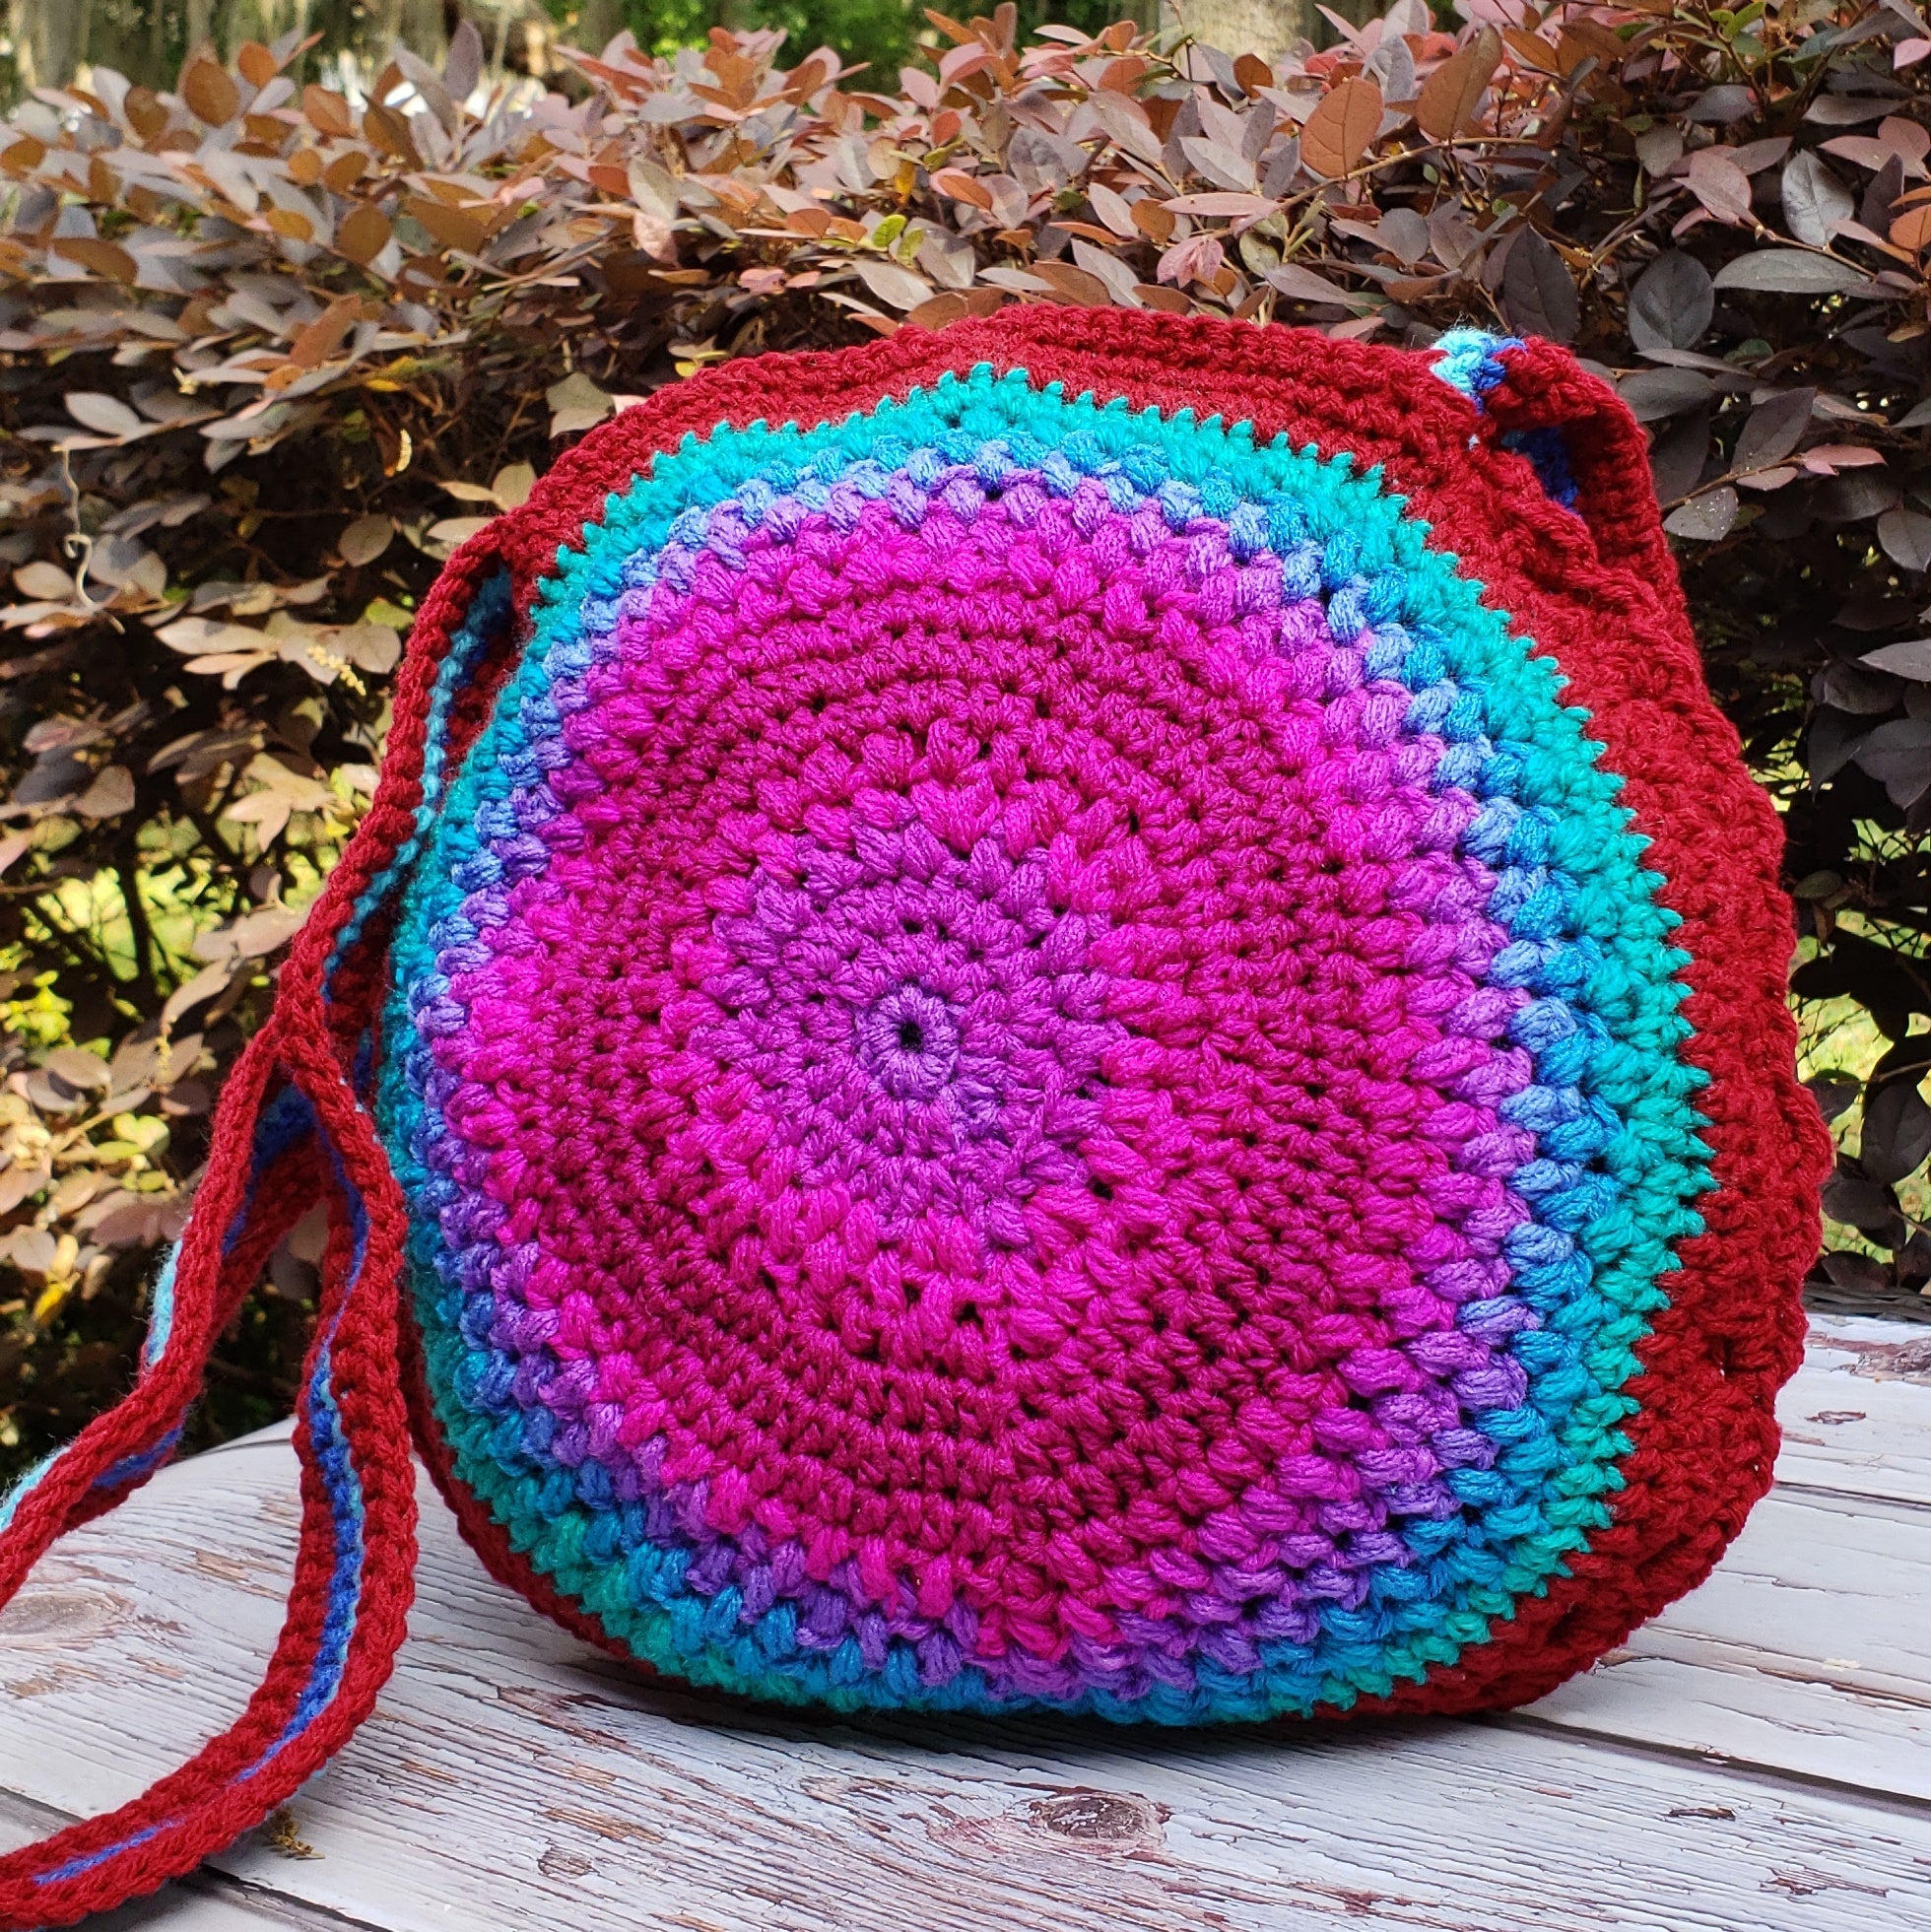 Crochet round bag with raffia yarn